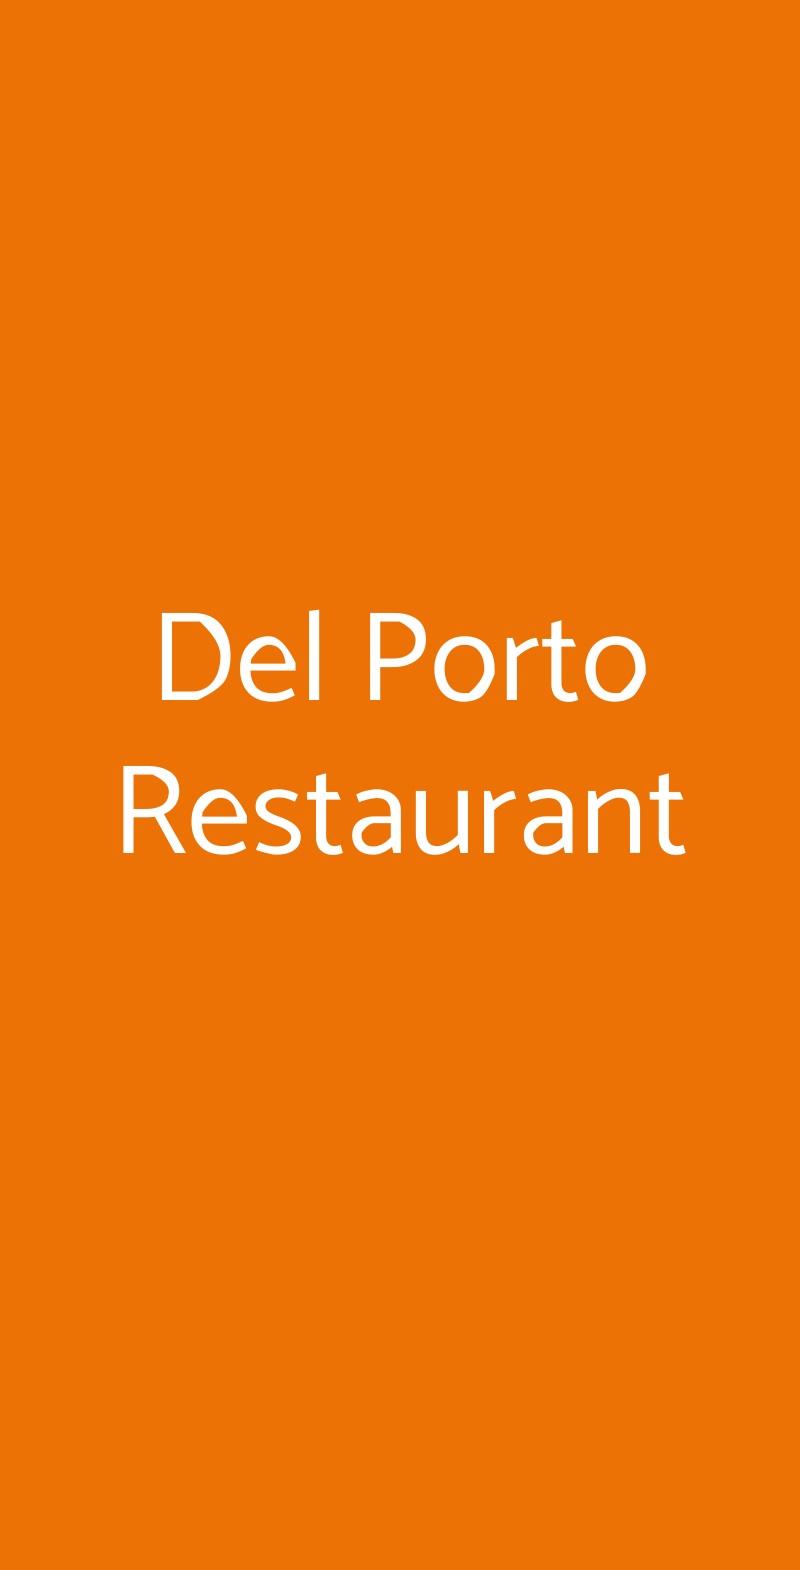 Del Porto Restaurant Torri del Benaco menù 1 pagina